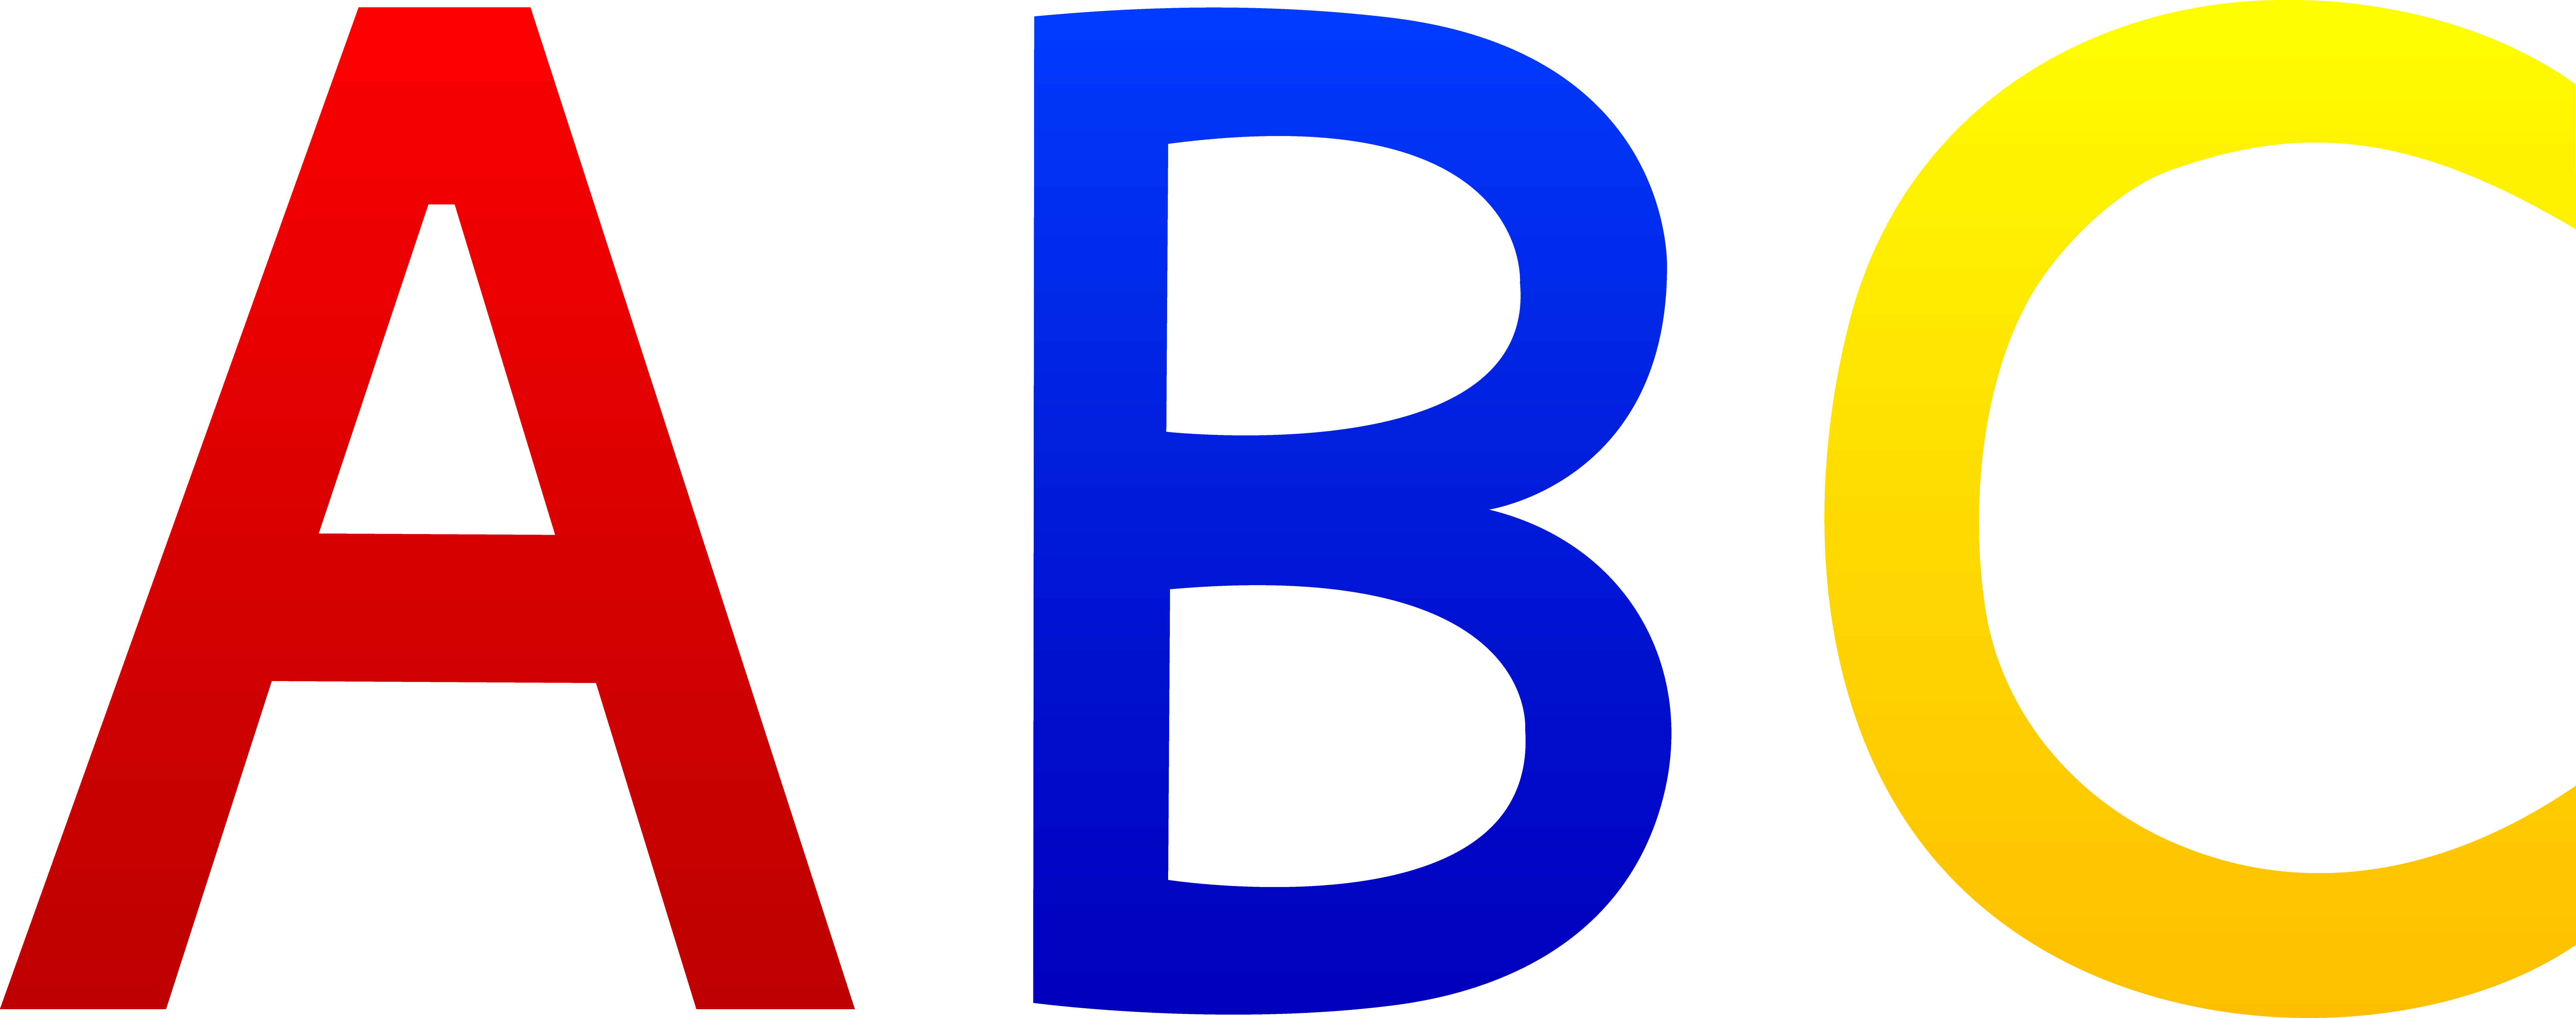 ABC Alphabet Letters.